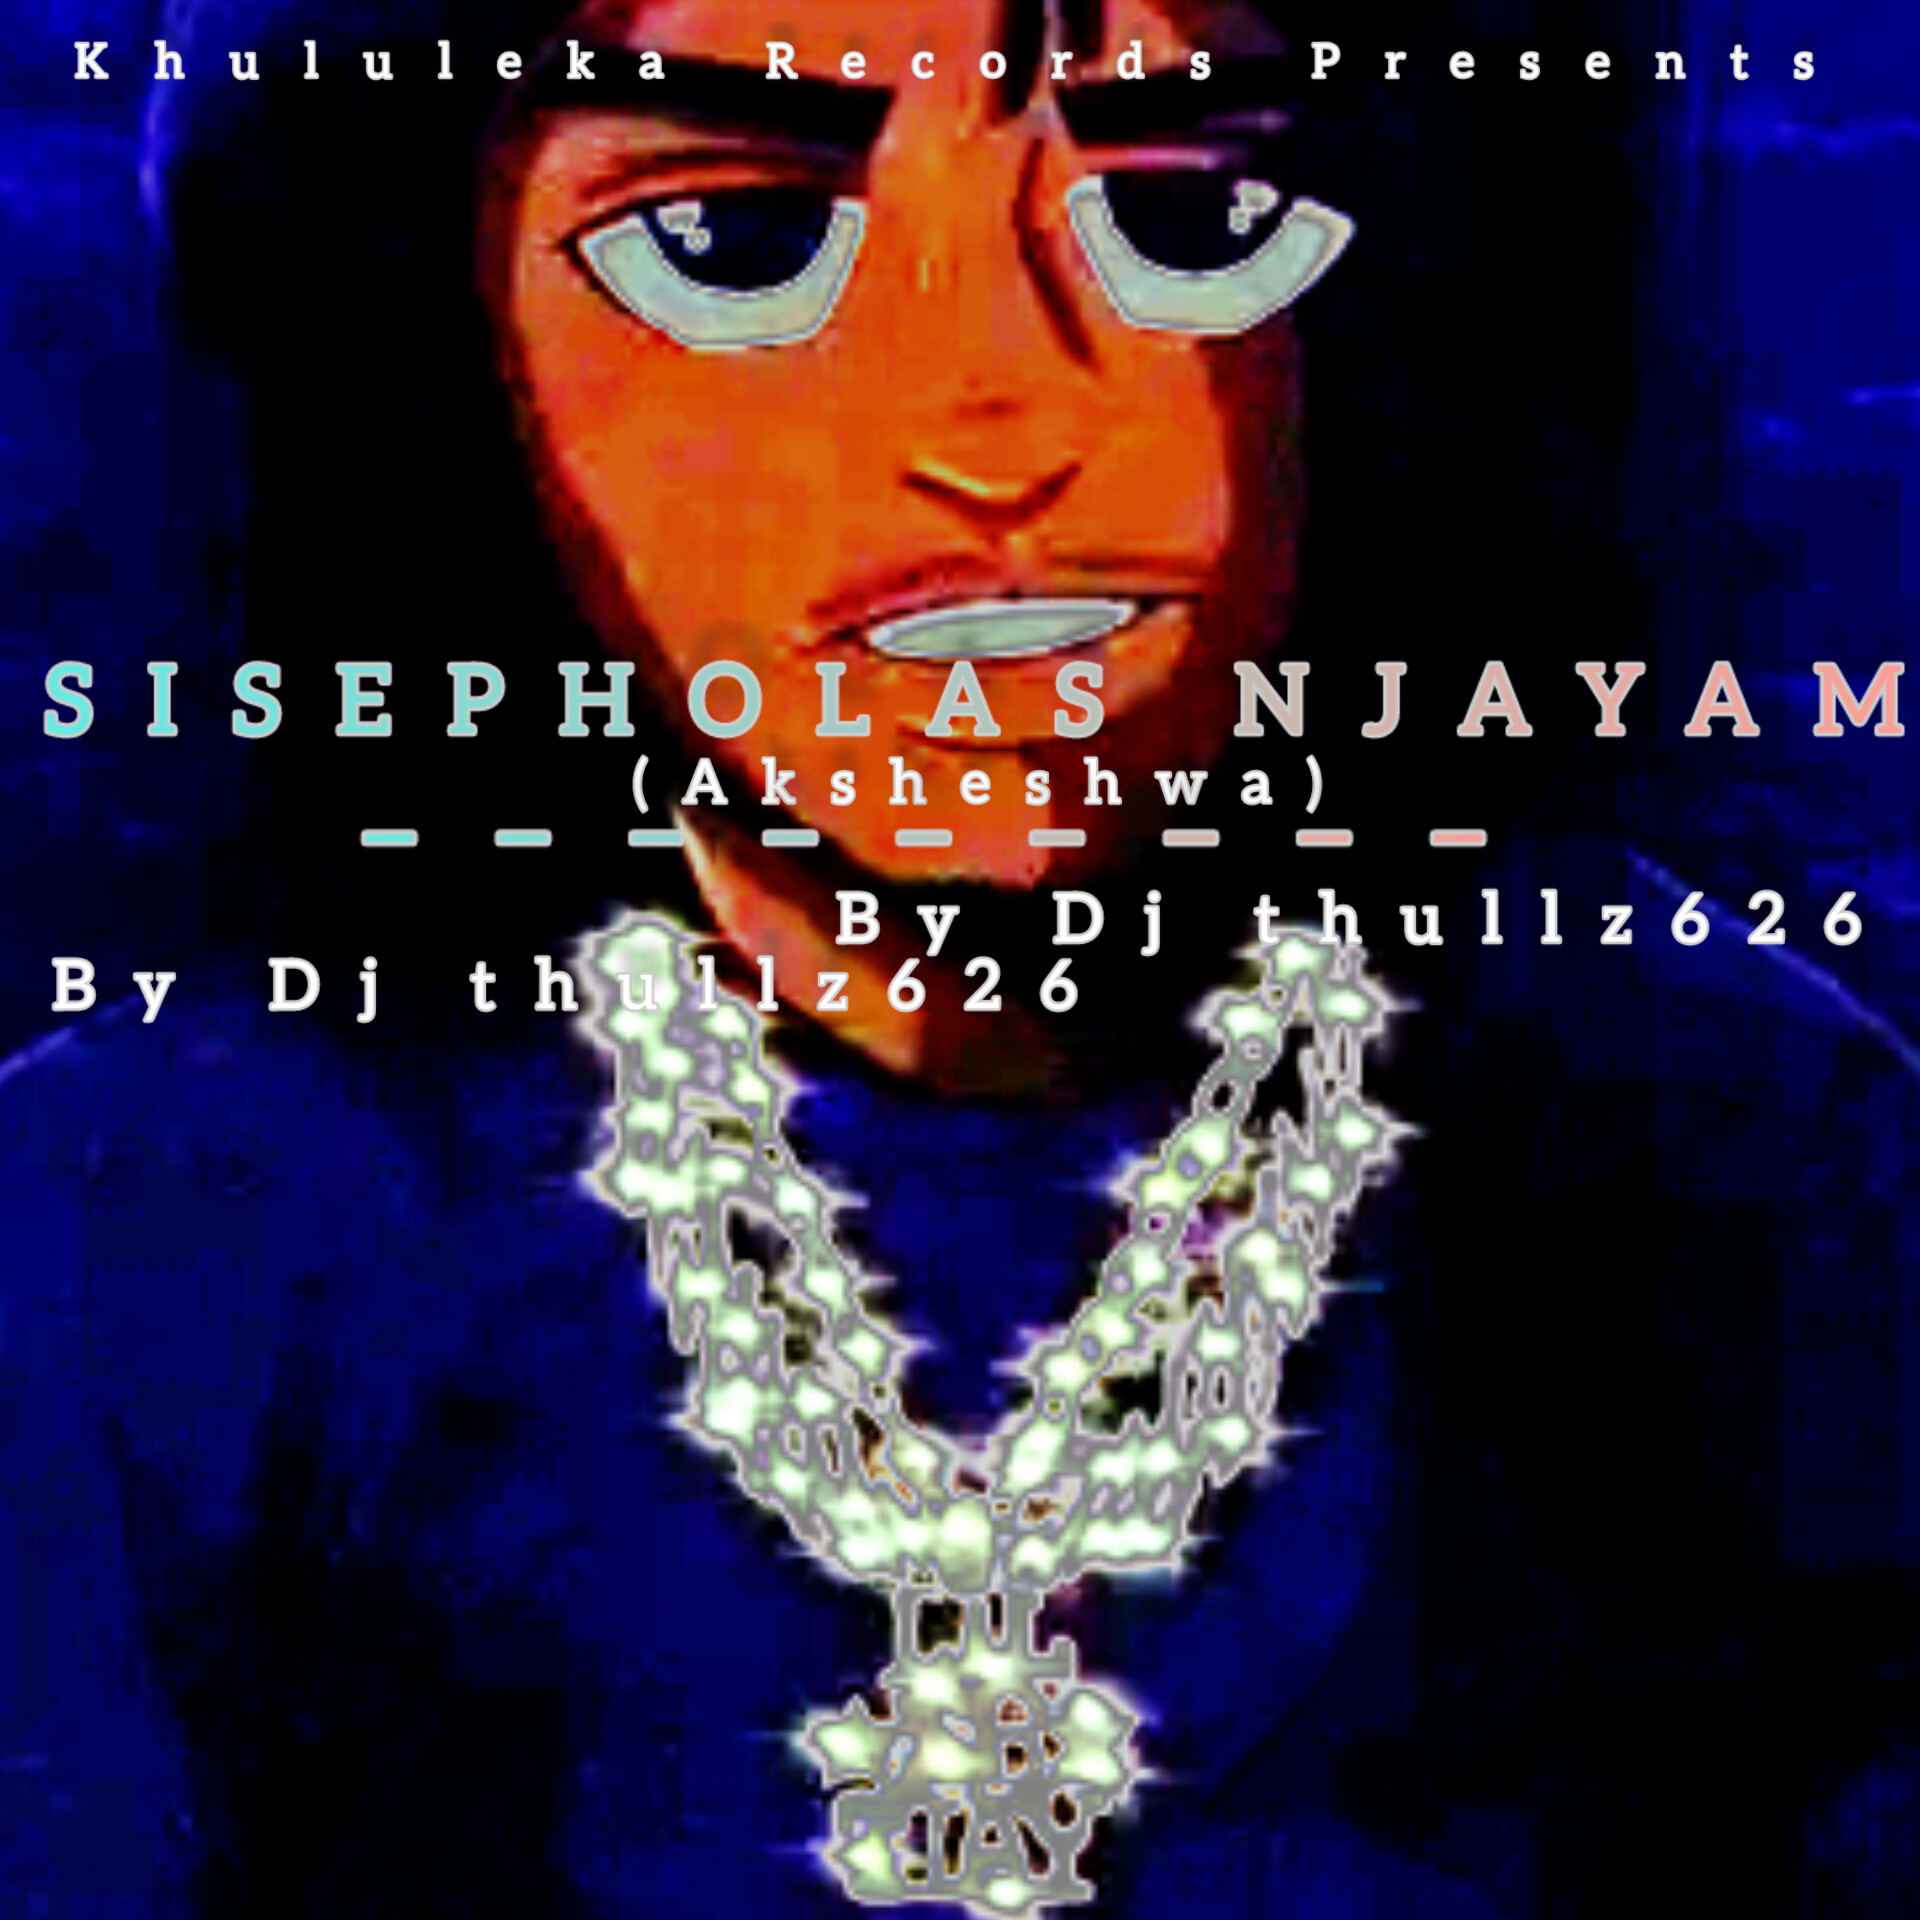 Sisepholas njayam (Aksheshwa) - Dj thullz626